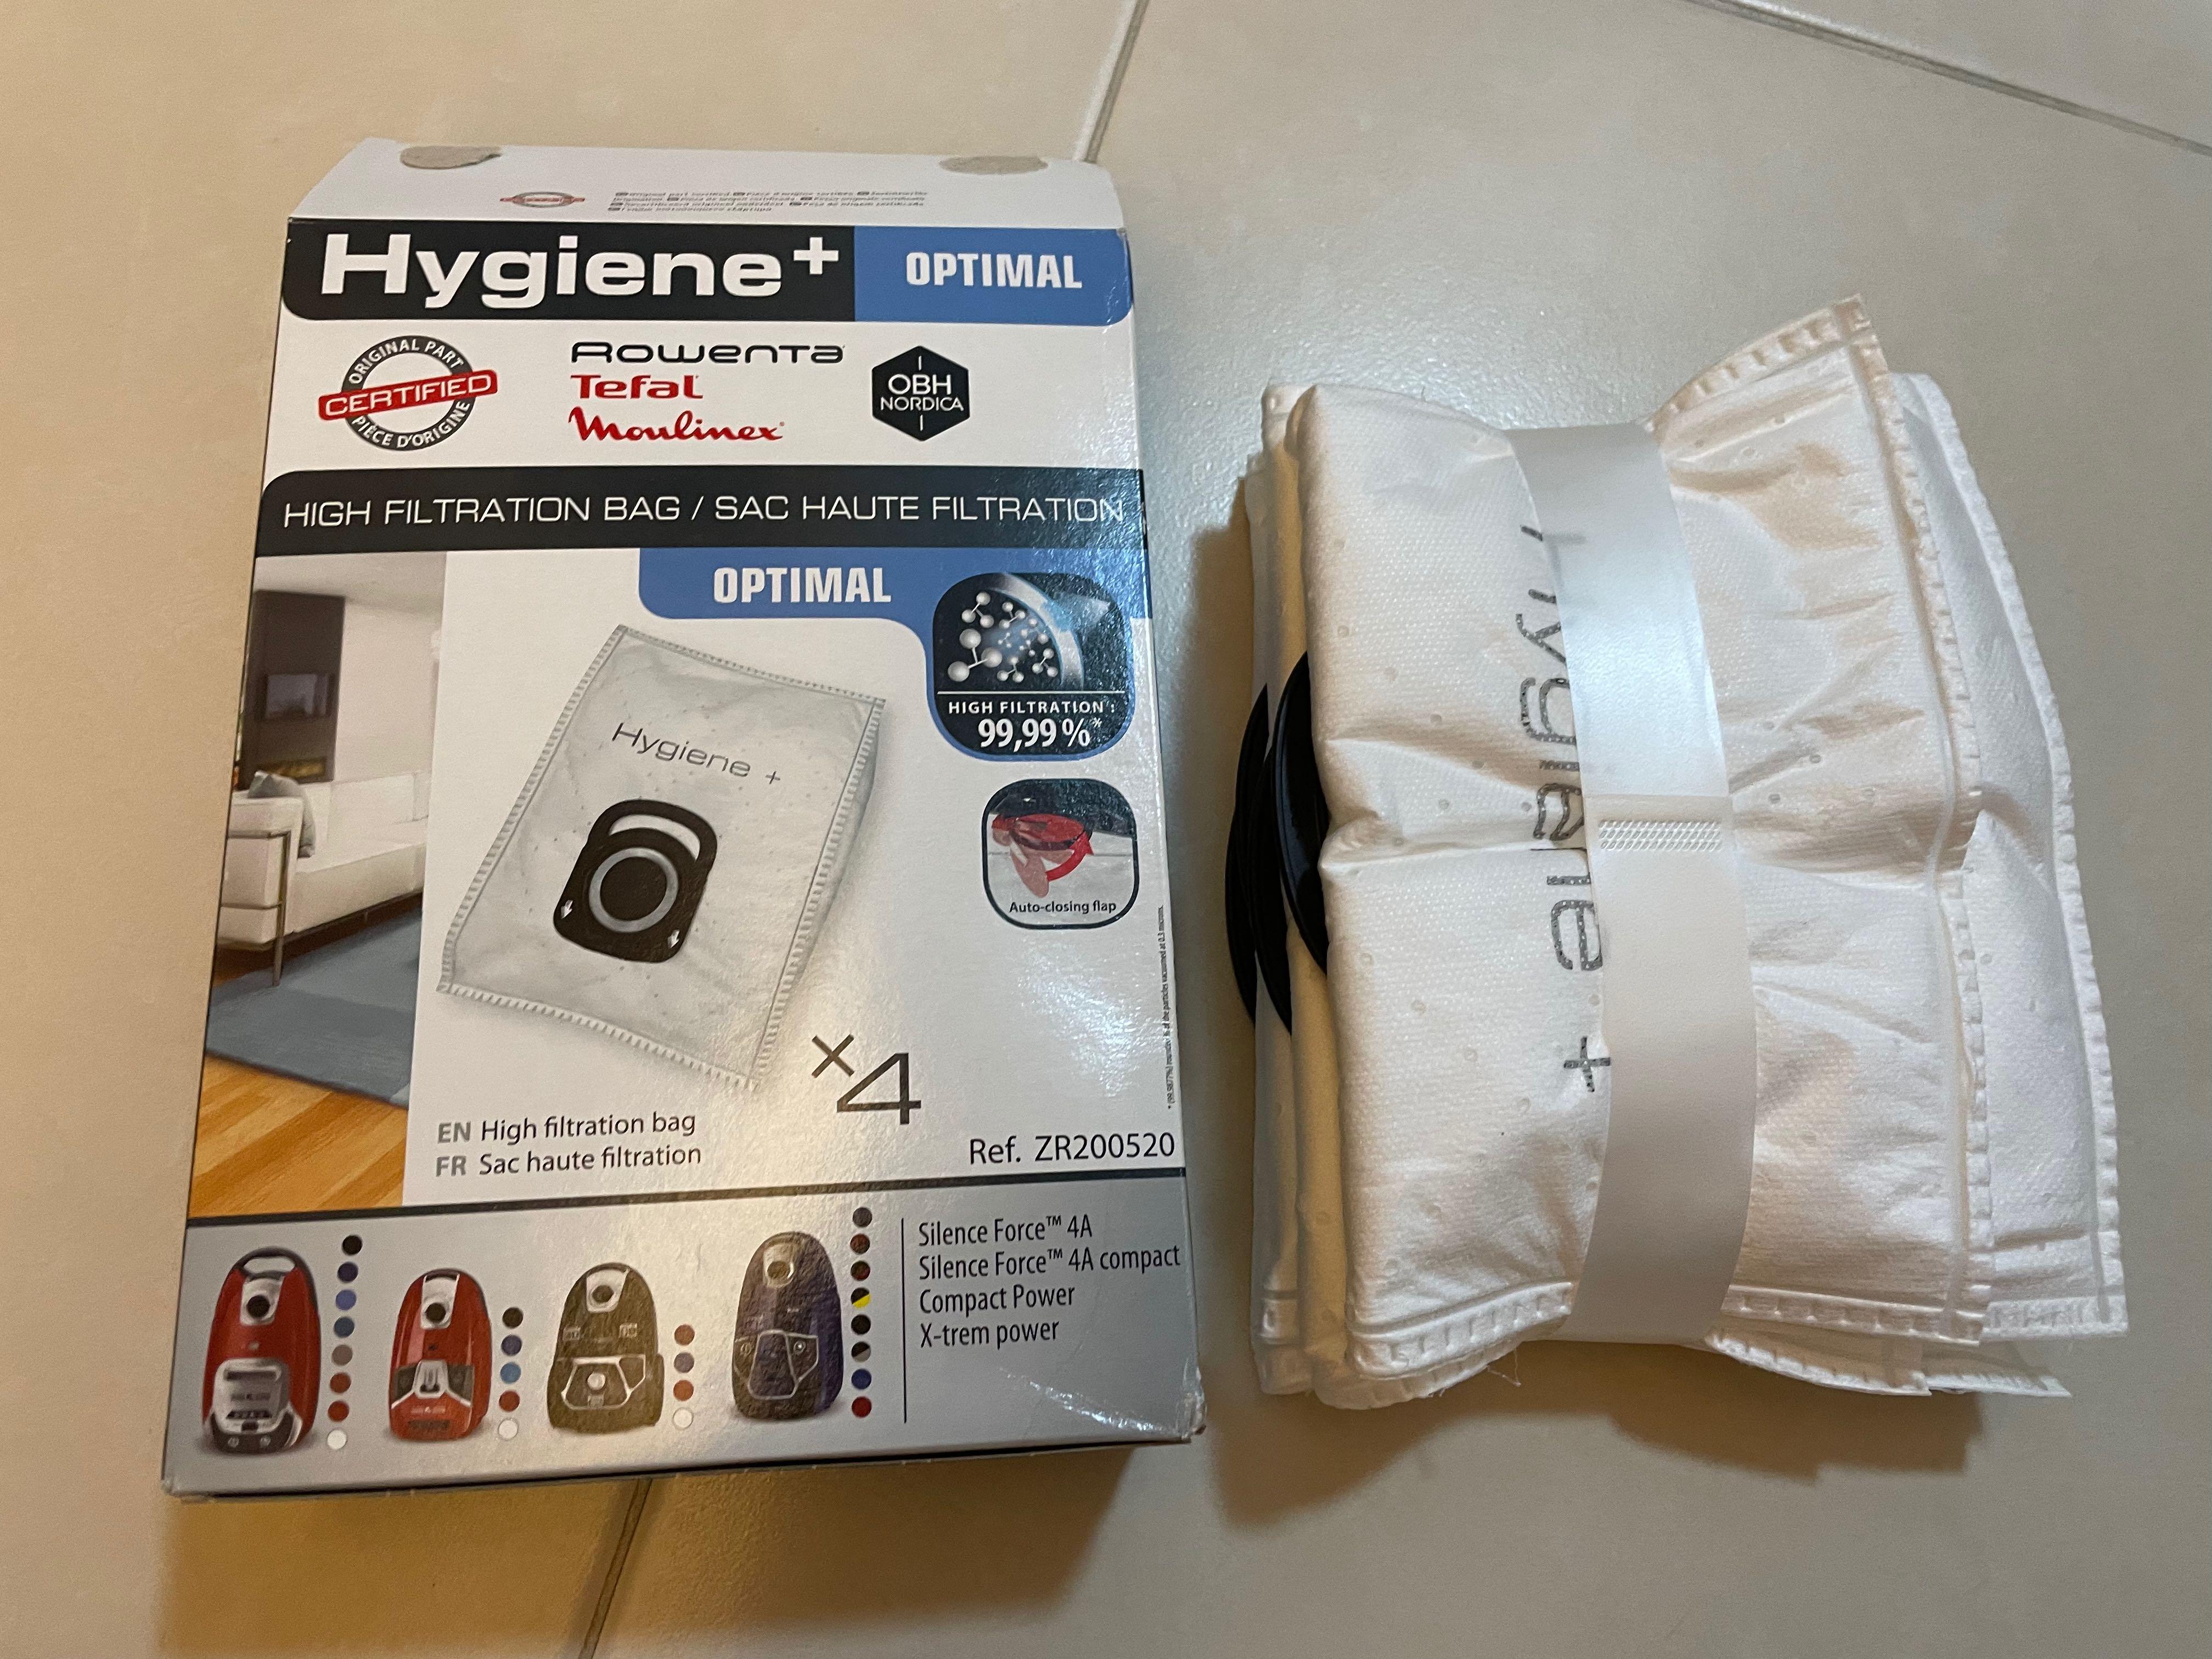 Sac aspirateur Rowenta Hygiene + - sac haute filtration Hygiene +